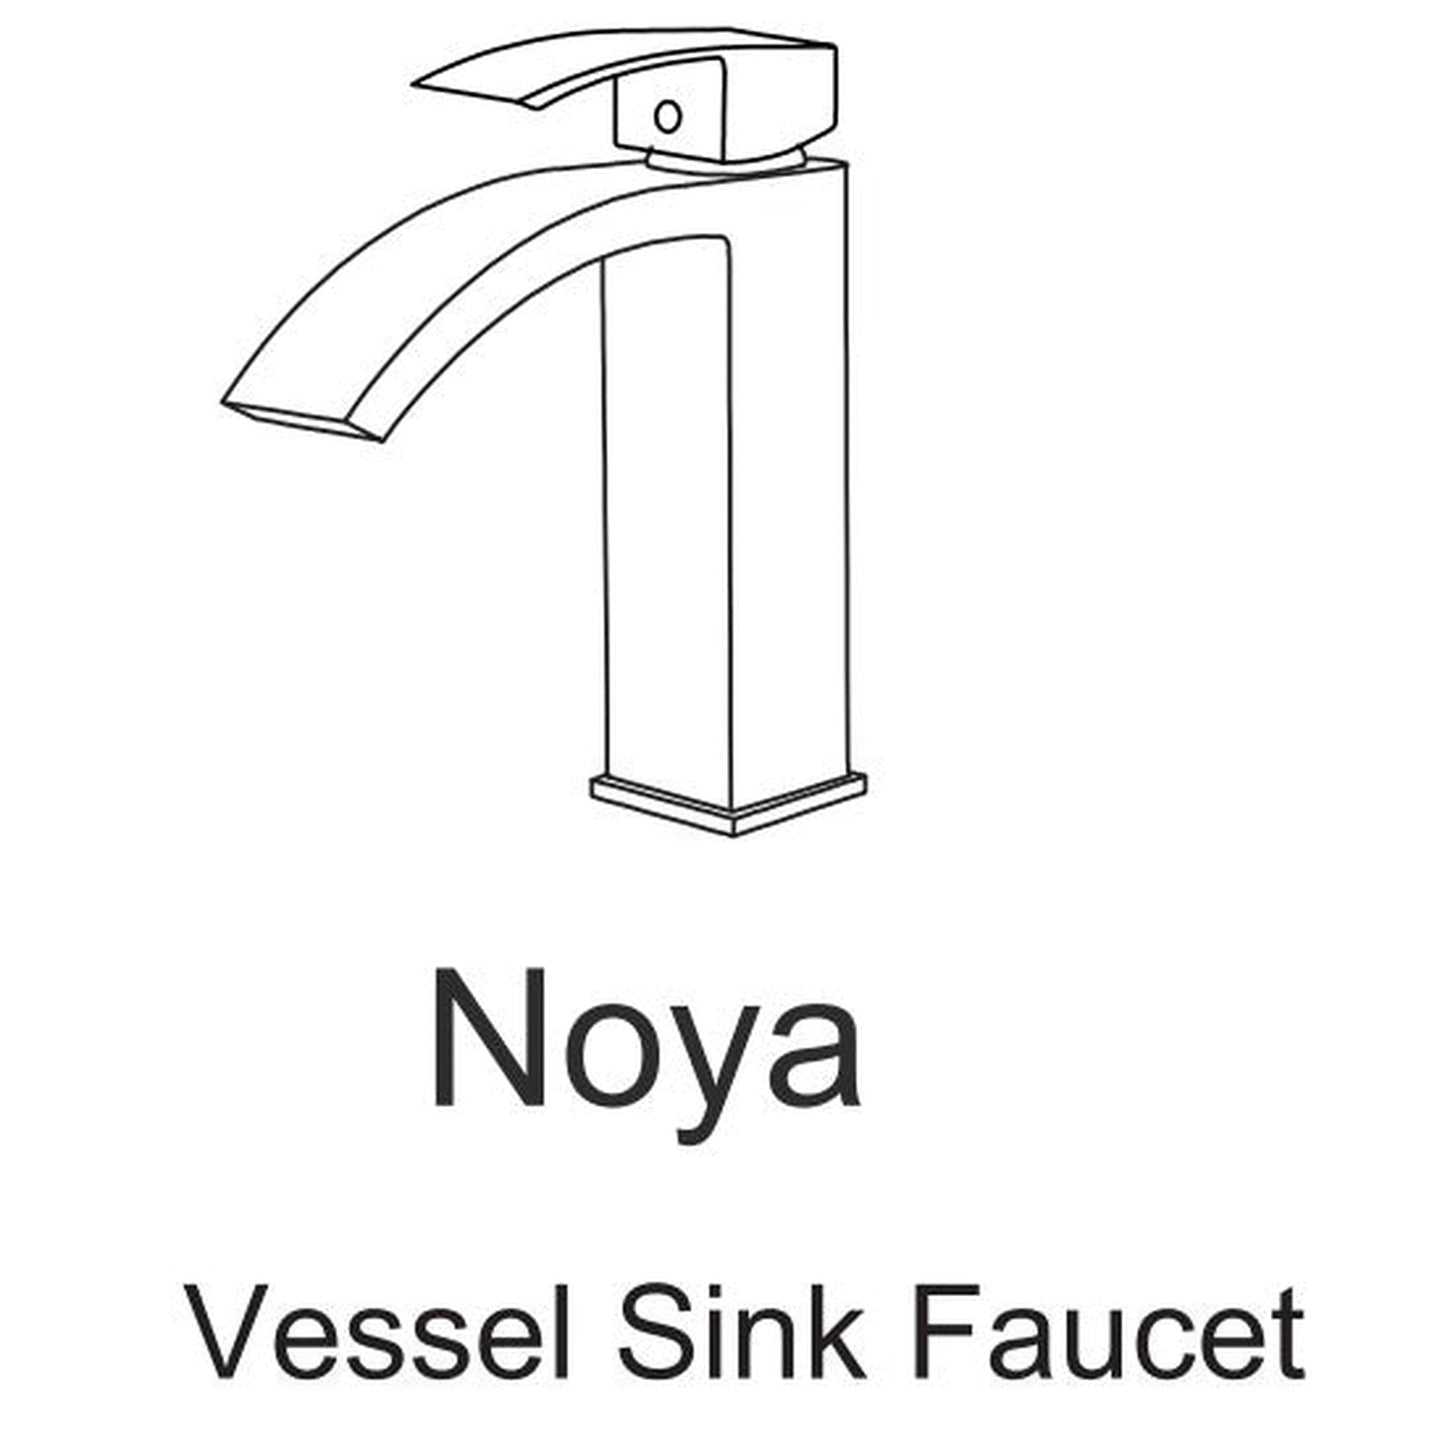 Vinnova Noya 7" Single Hole Brushed Gold Low Arc Vessel Bathroom Sink Faucet